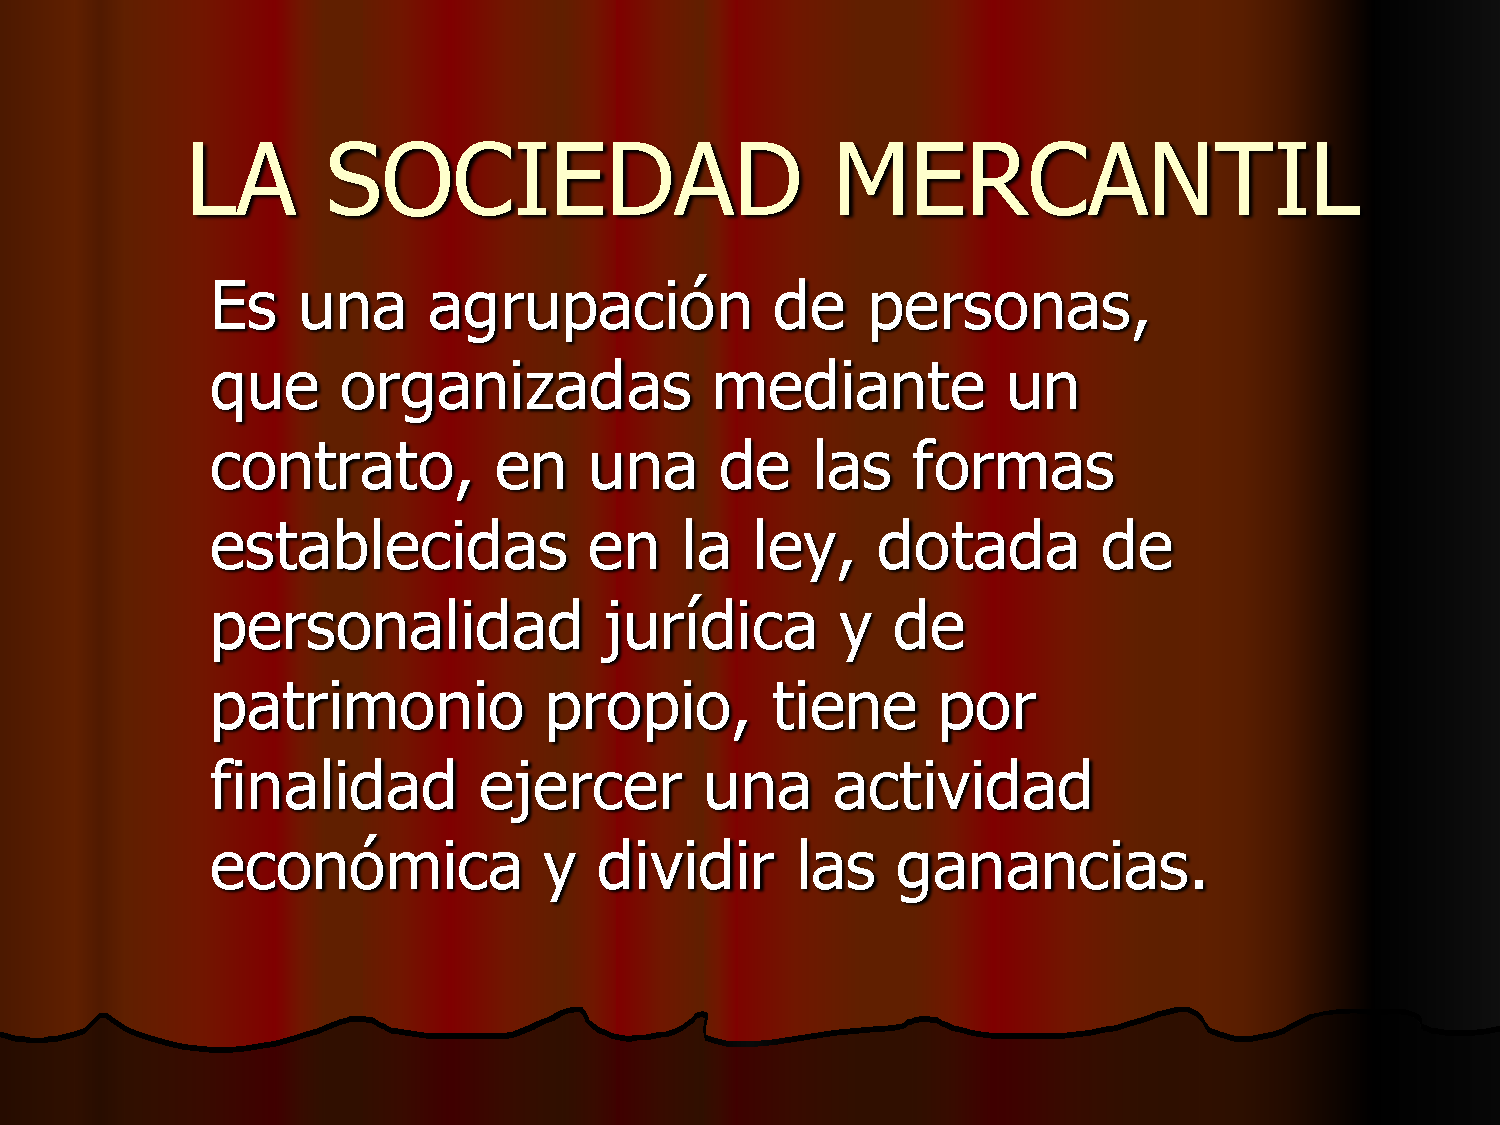 Tipos de sociedades mercantiles en España